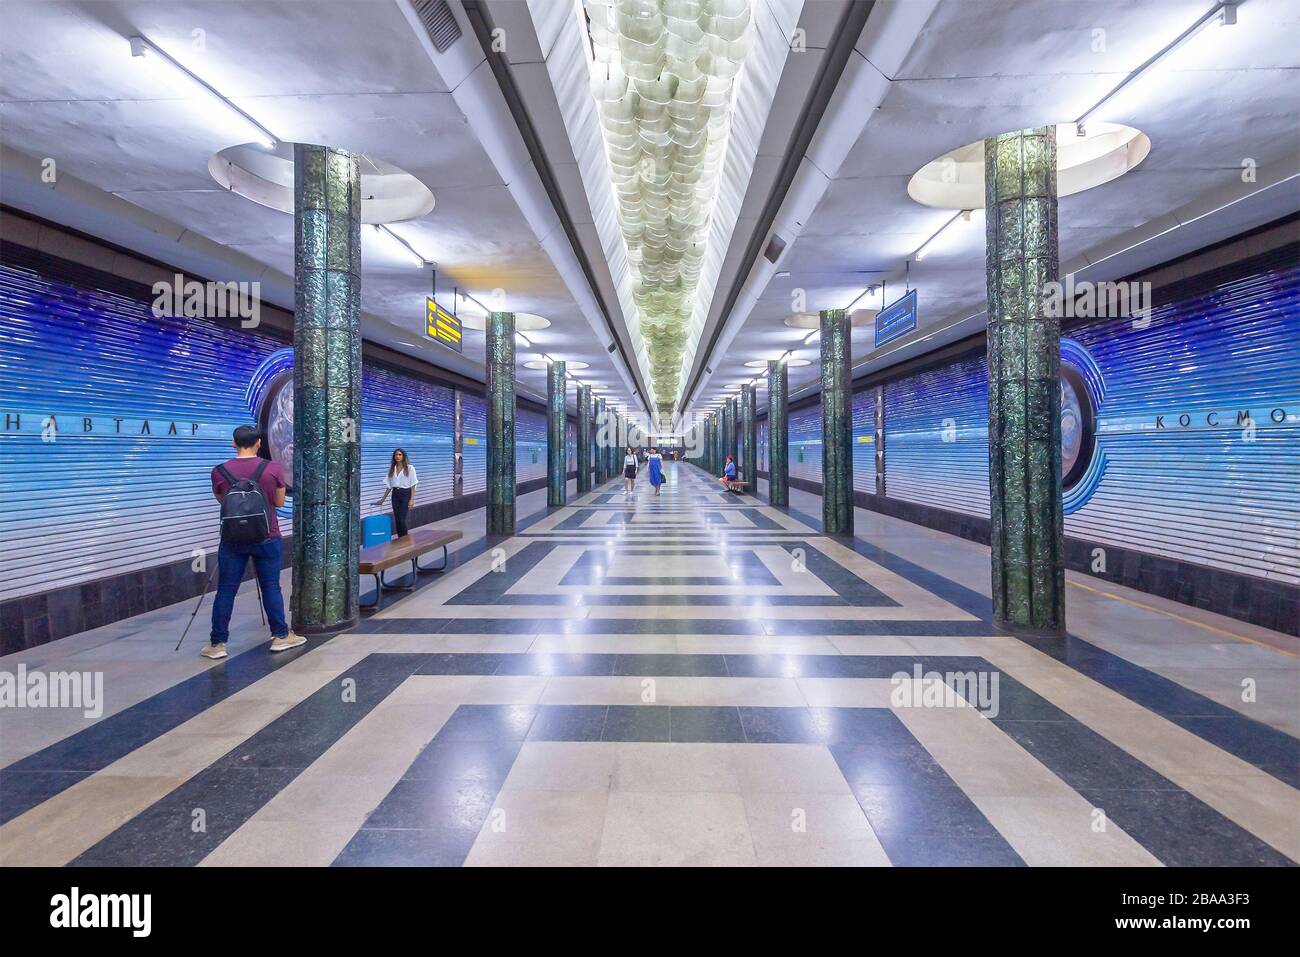 Kosmonavtlar Metro Station in programma spazio decorazione a tema a Tashkent, Uzbekistan. Stazione di metropolitana da anni sovietici con colonne simmetriche. Foto Stock